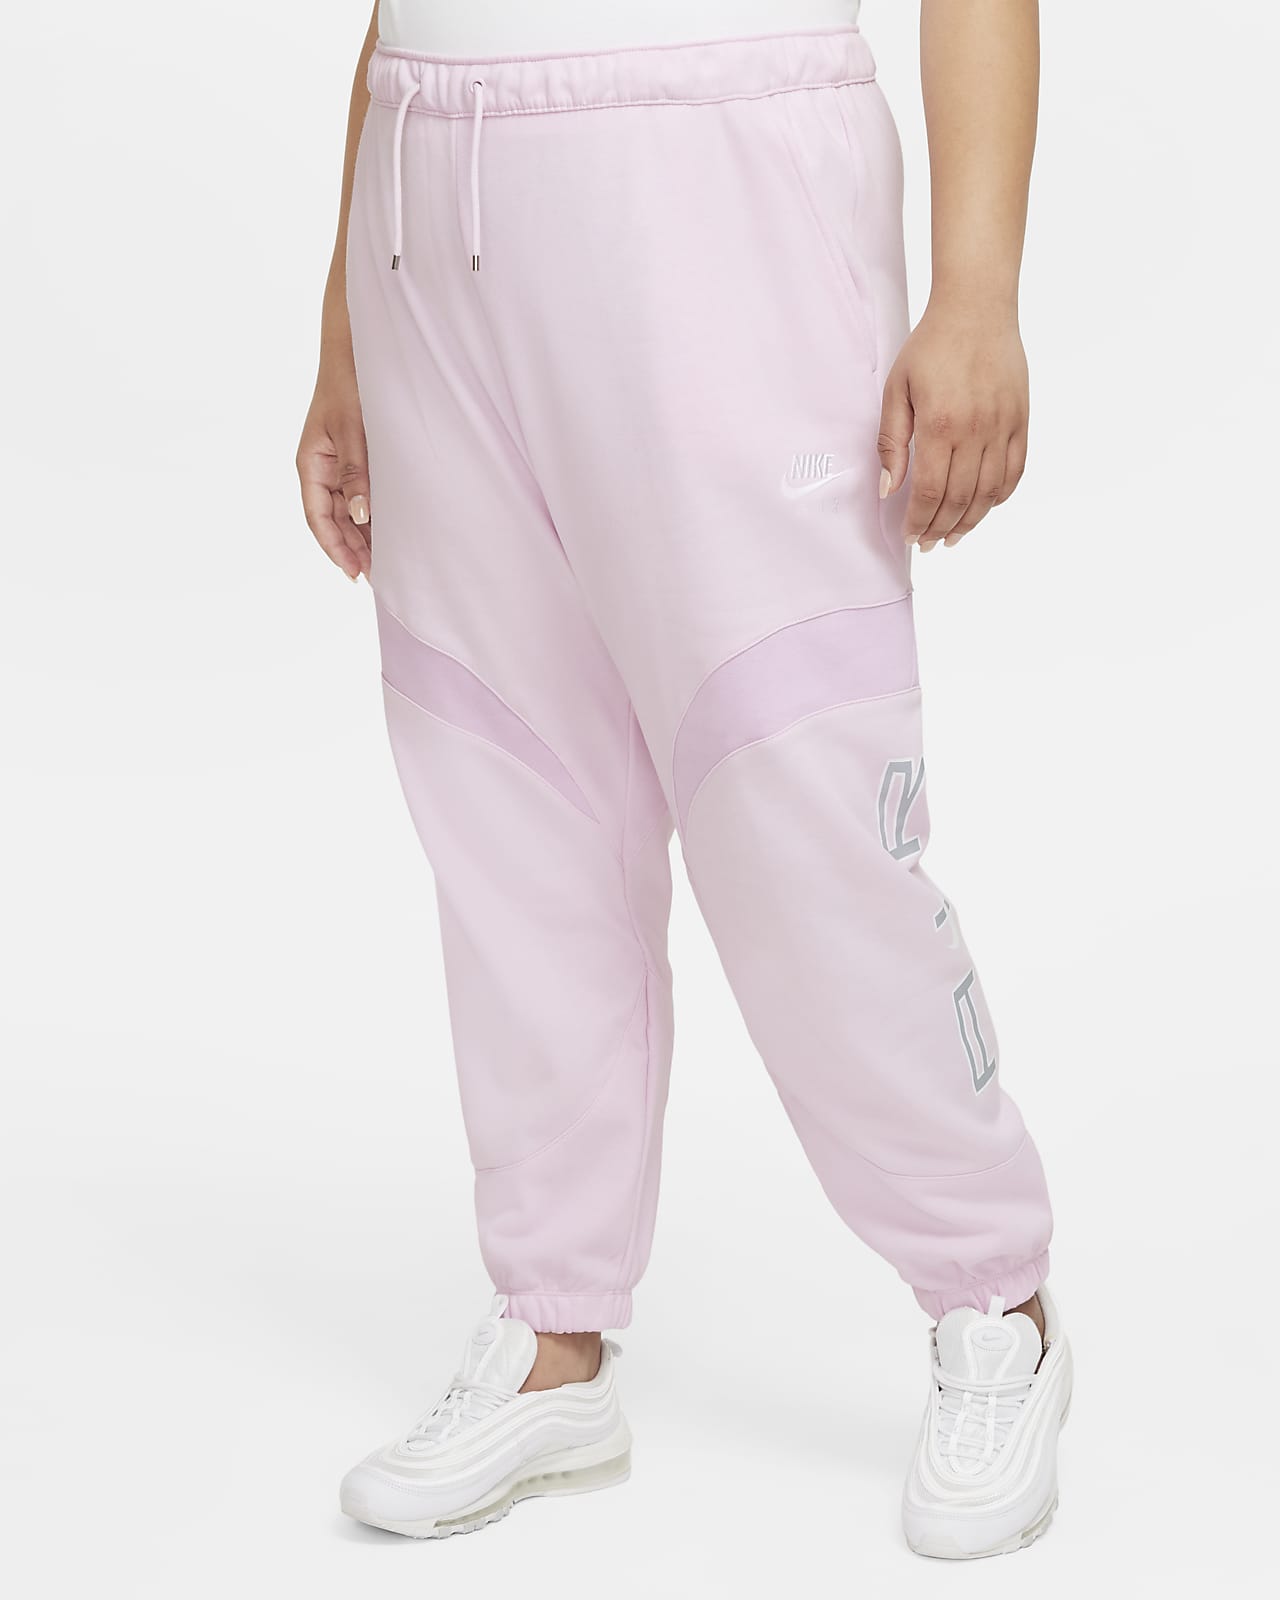 Pantalon de jogging Nike Air pour Femme (grande taille)